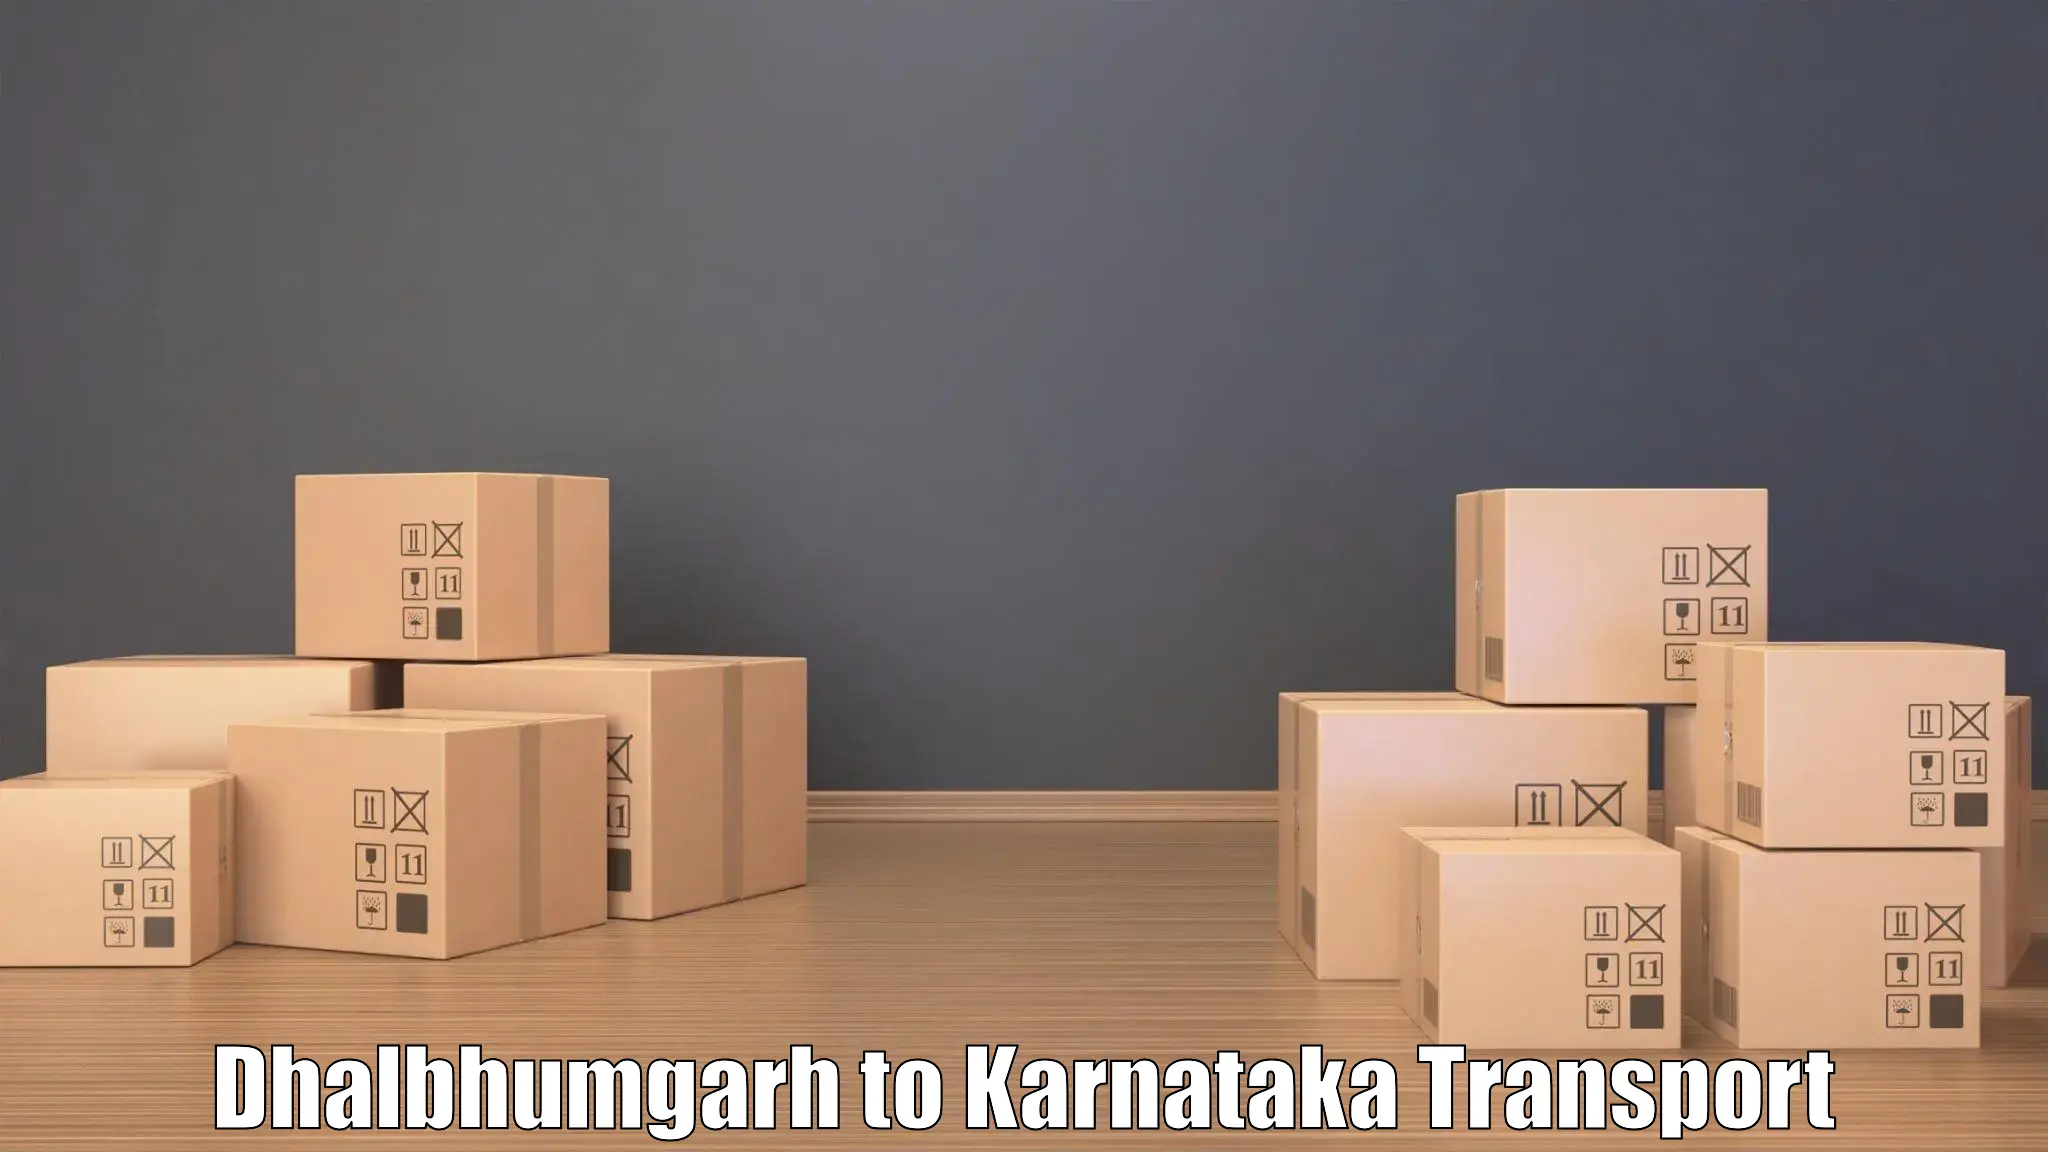 Land transport services Dhalbhumgarh to Uttara Kannada